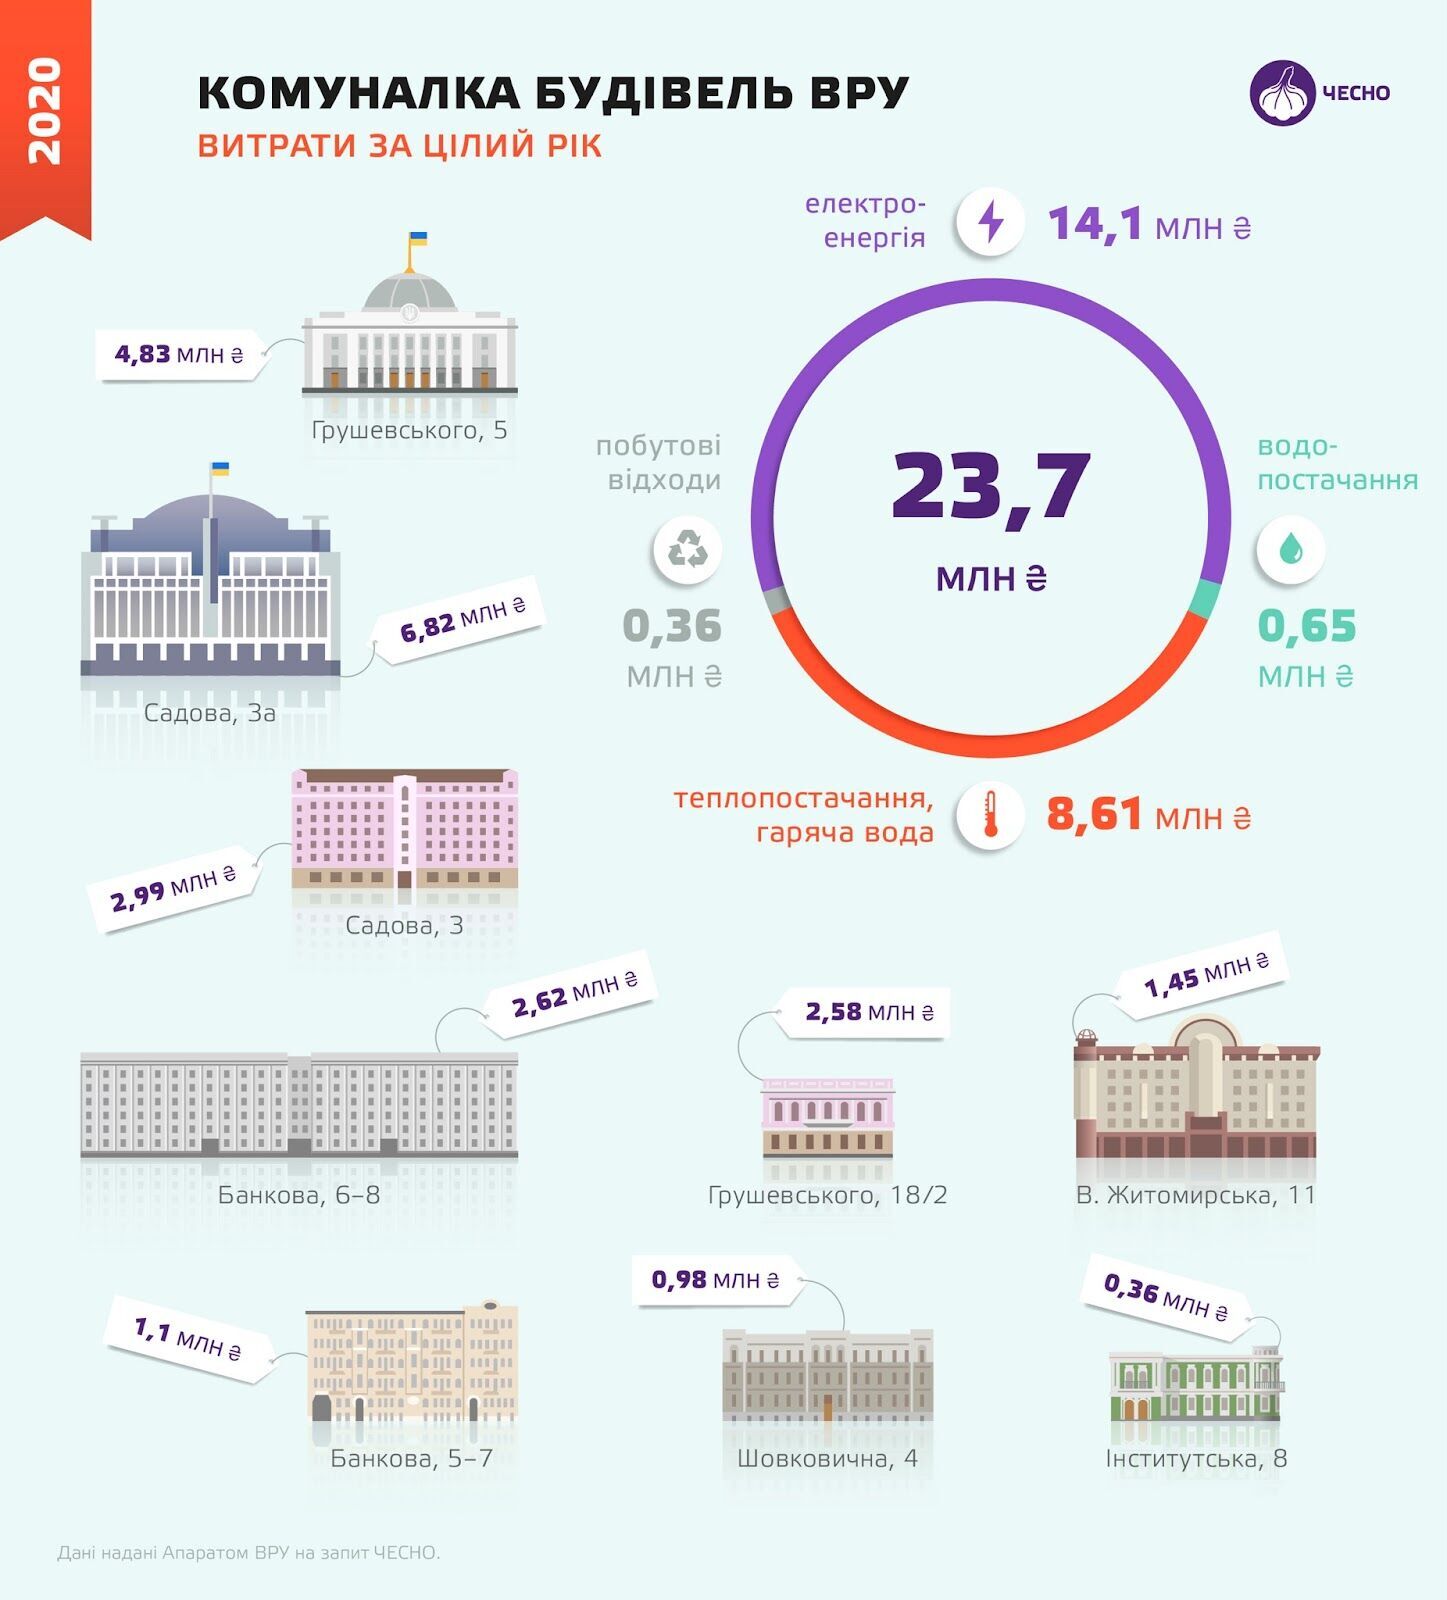 Верхованя Рада заплатила за коммунальные услуги 23,7 млн грн в 2020 году